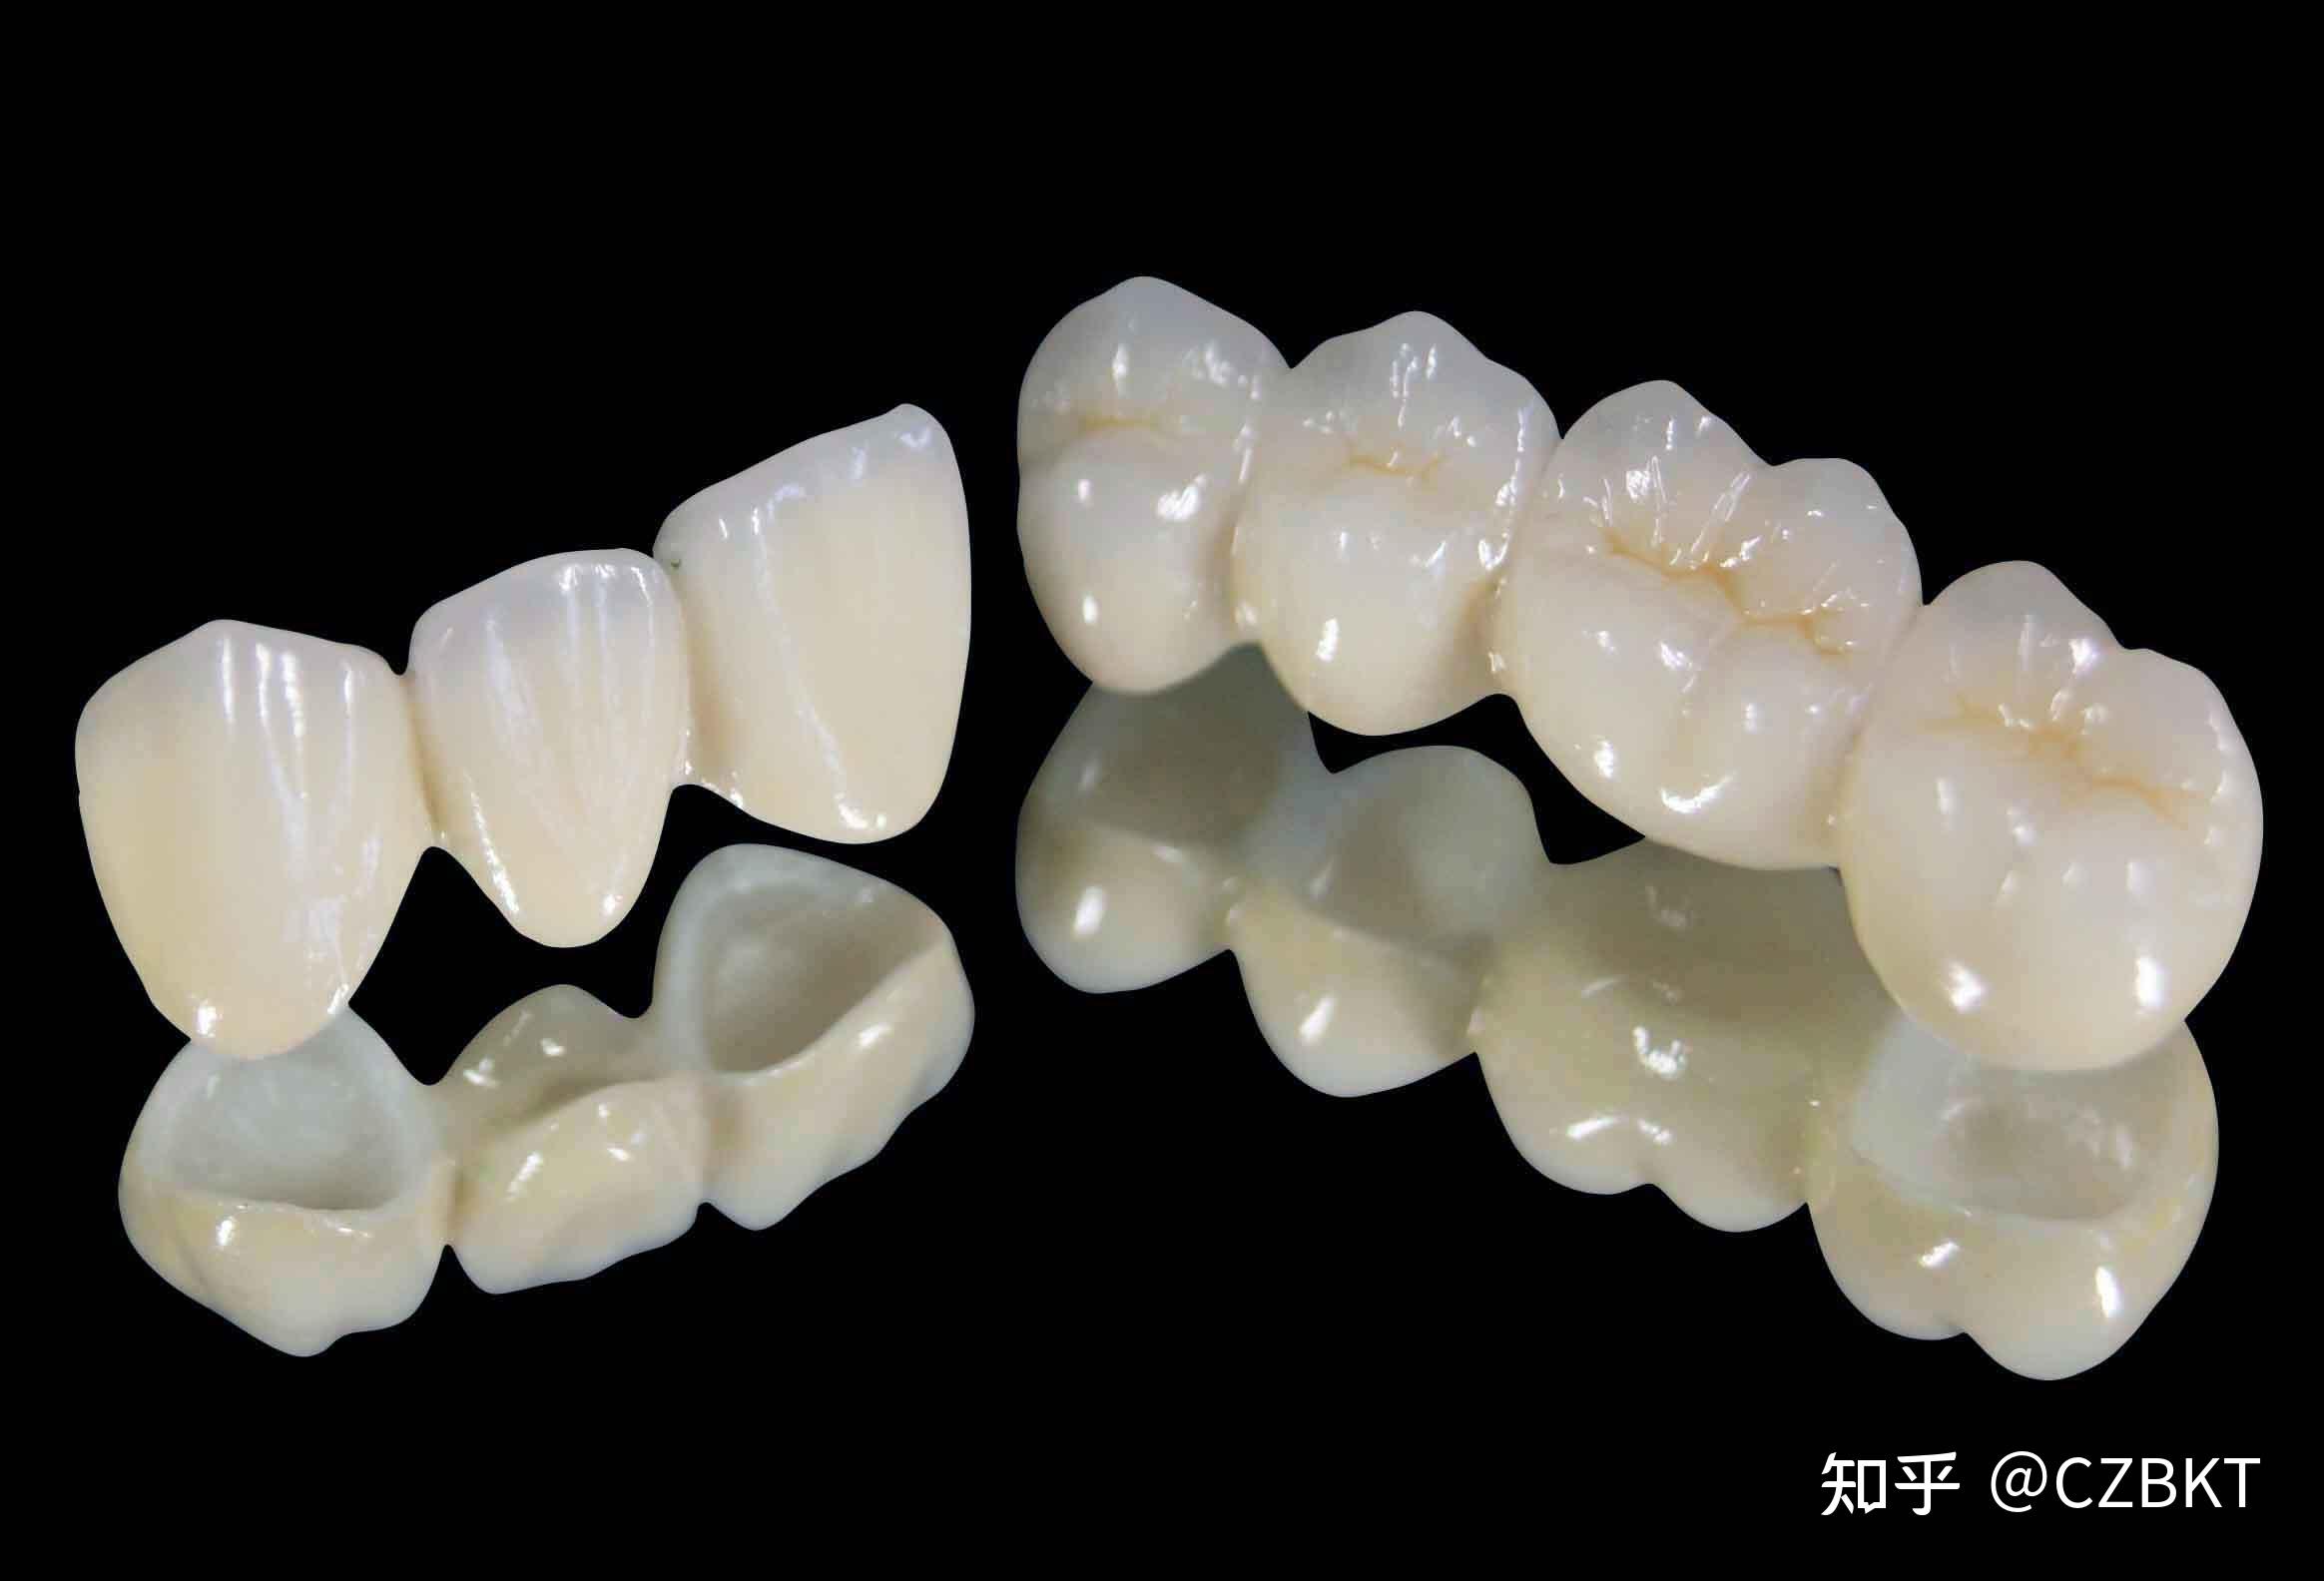 种植牙由三部分组成:种植体(人工牙根),基台(连接部位),牙冠